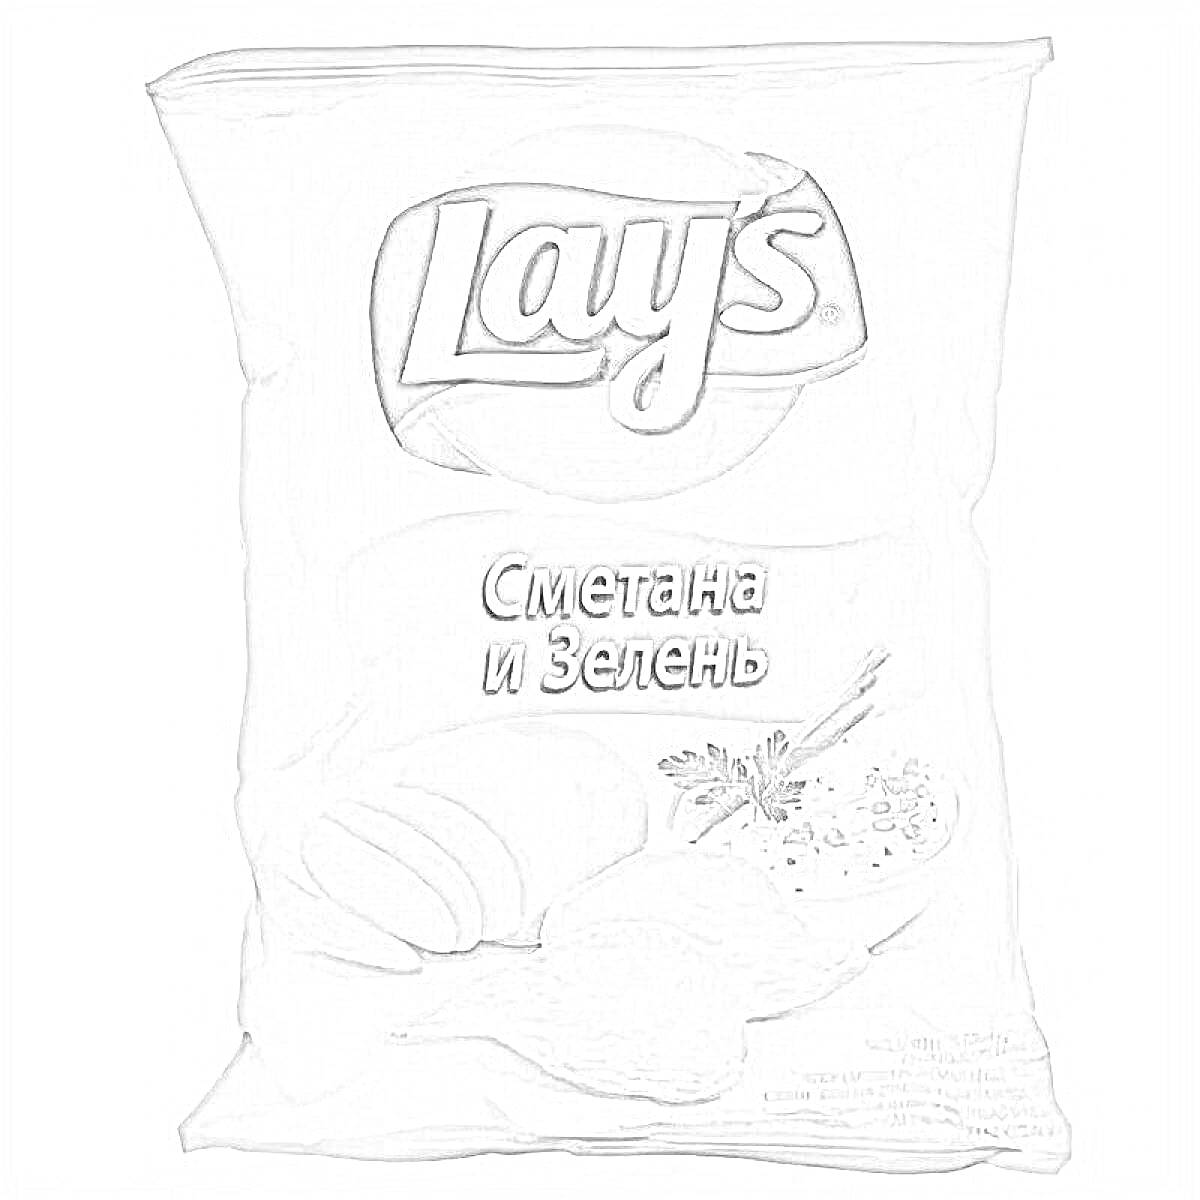 Раскраска Пакет чипсов Lay's, вкус сметана и зелень, изображены чипсы и зелень